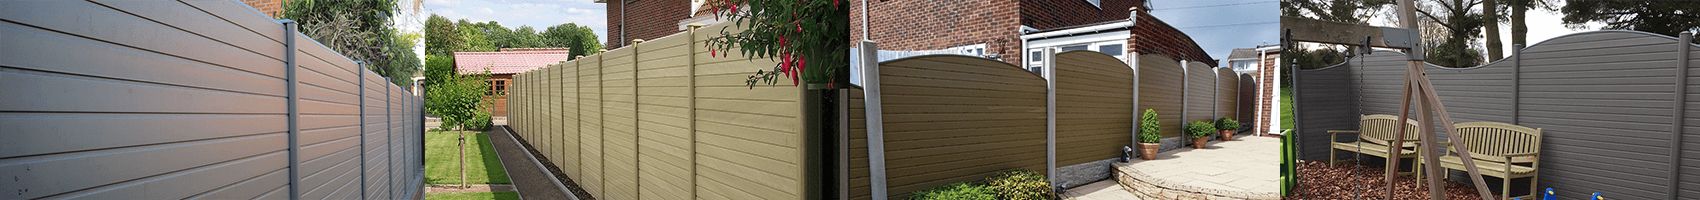 110mm x 90mm PVC Composite Fence Post Graphite 2.4m